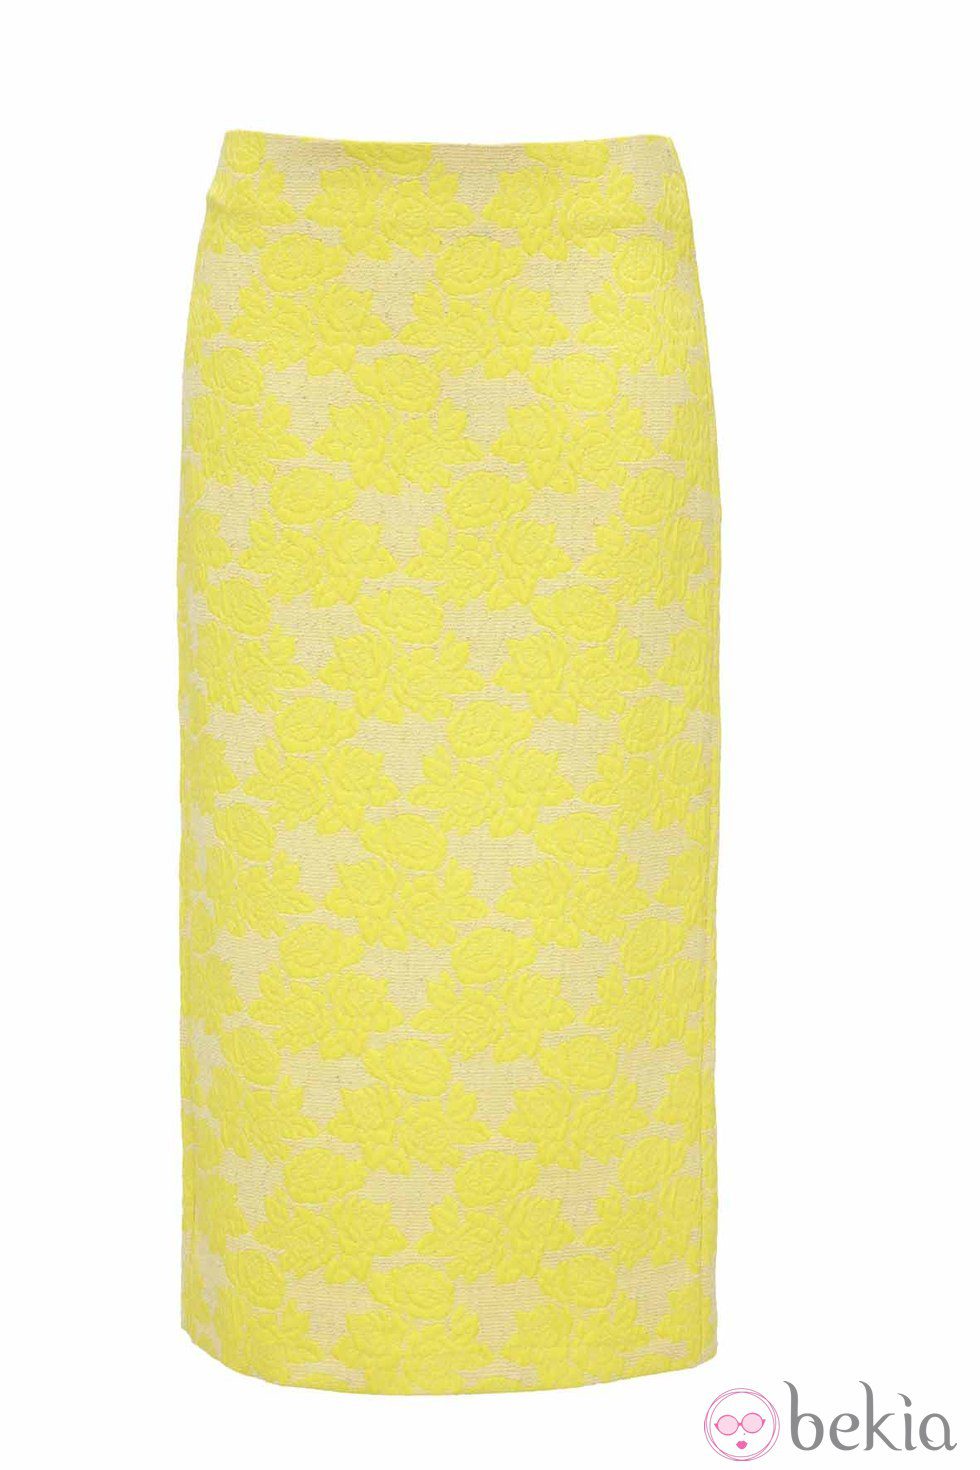 Falda larga amarilla de Asos para la colección Rosetti